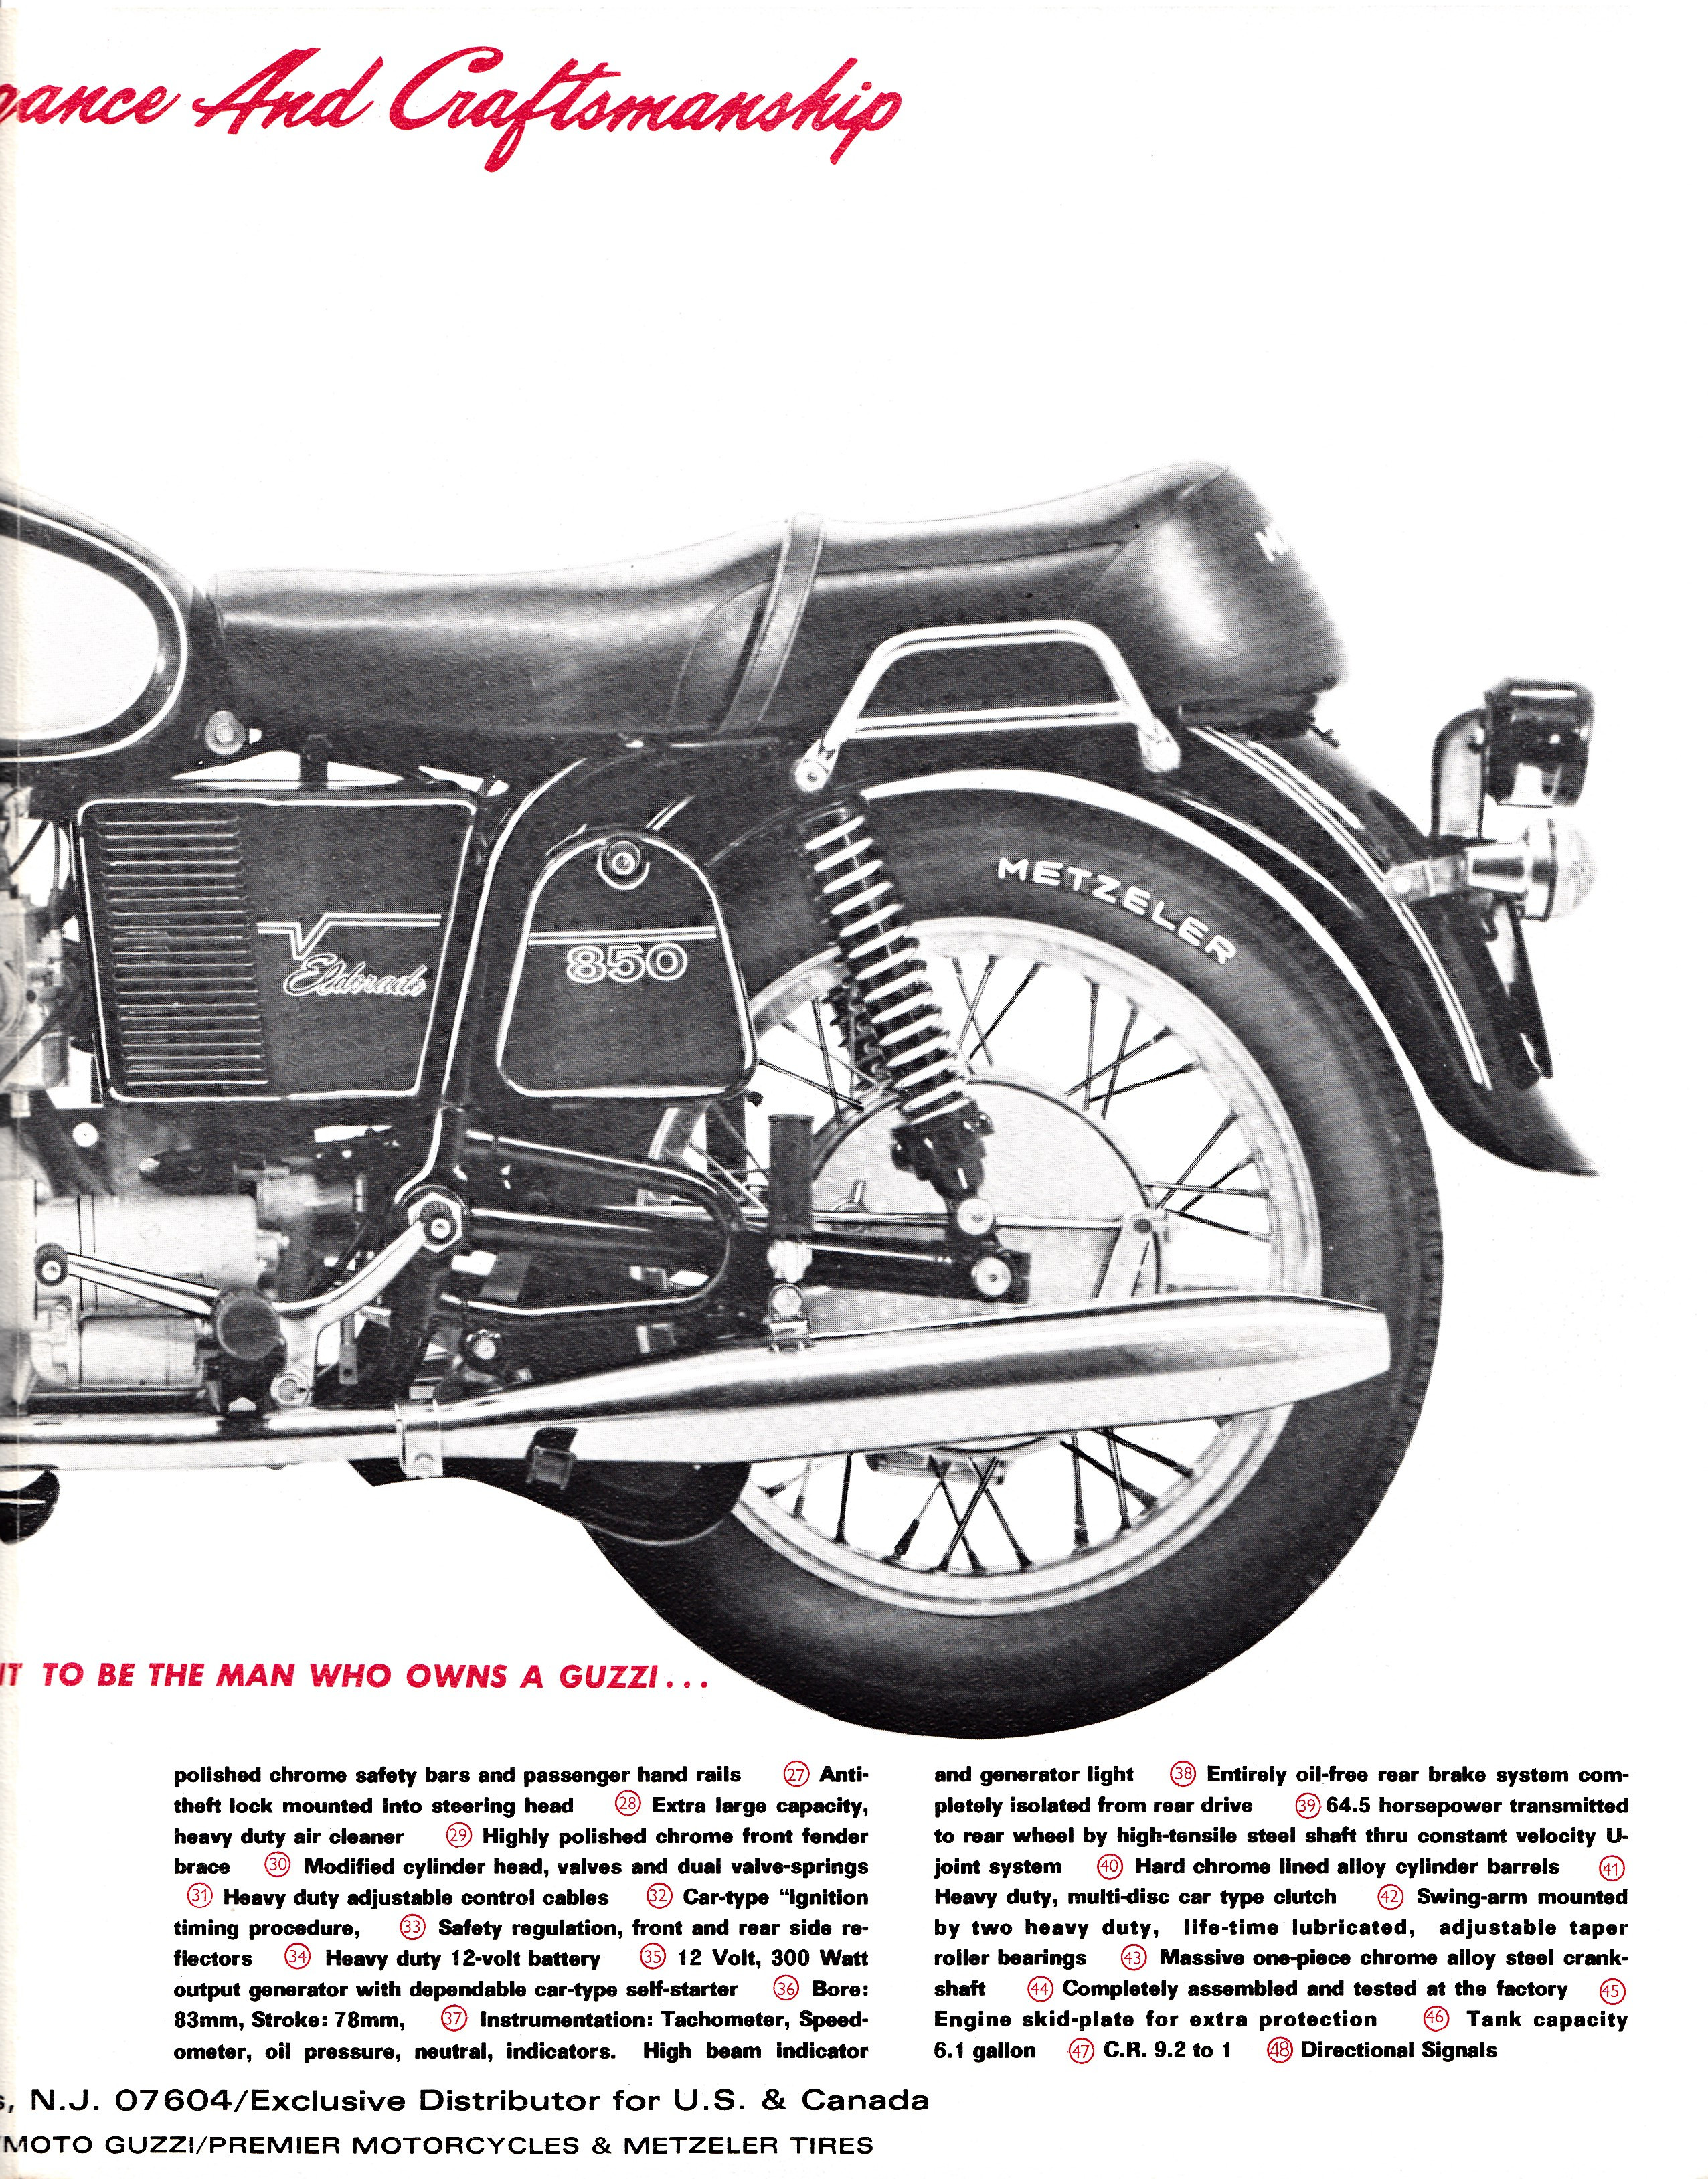 Moto Guzzi Eldorado Factory Brochure, Page 1 of 4.